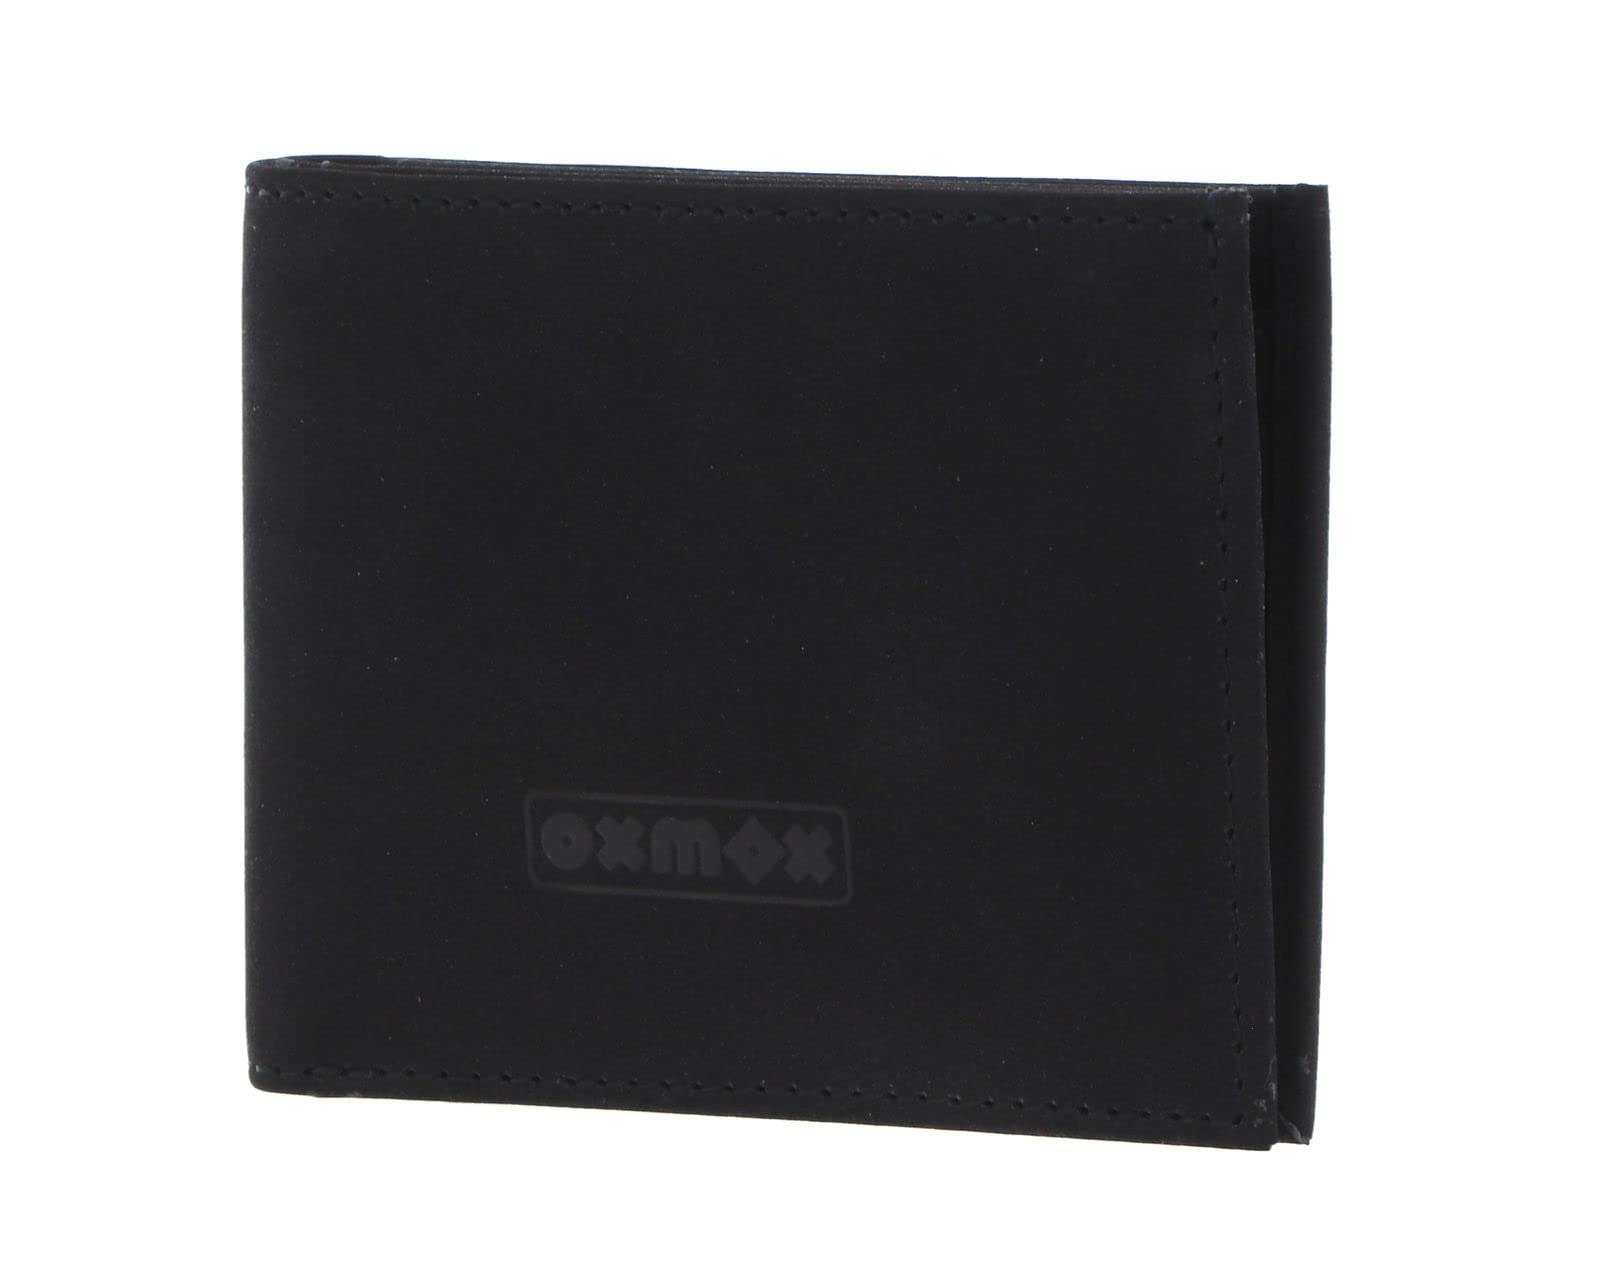 Oxmox New Cryptan - Geldbörse 2cc 10 cm RFID black